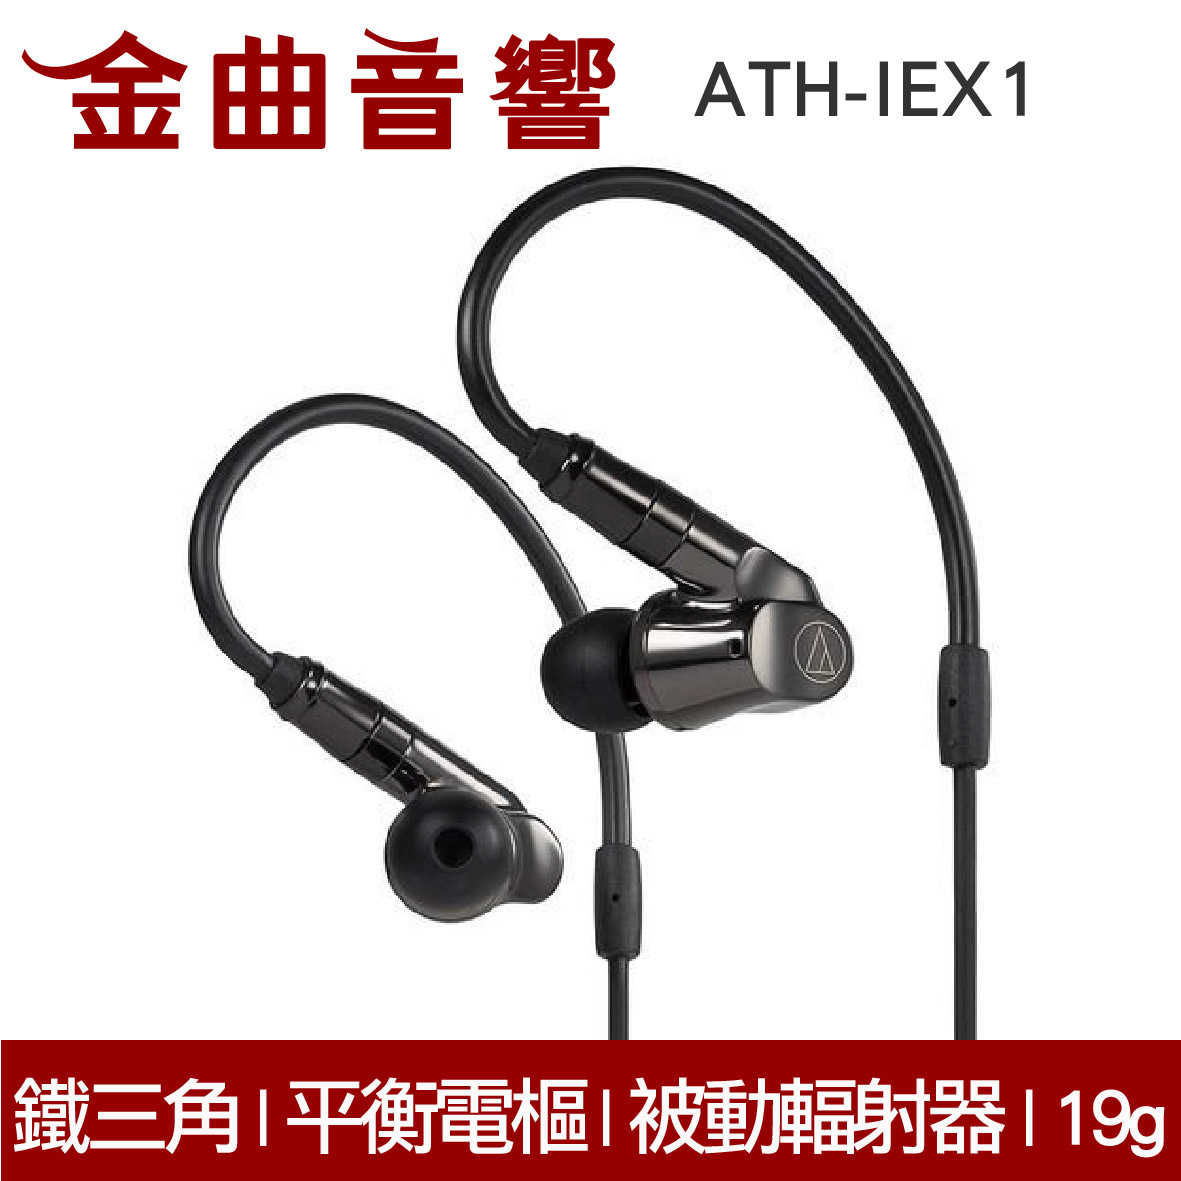 鐵三角 ATH-IEX1 黑色 平衡電樞與被動輻射器耳道 入耳式耳機  | 金曲音響